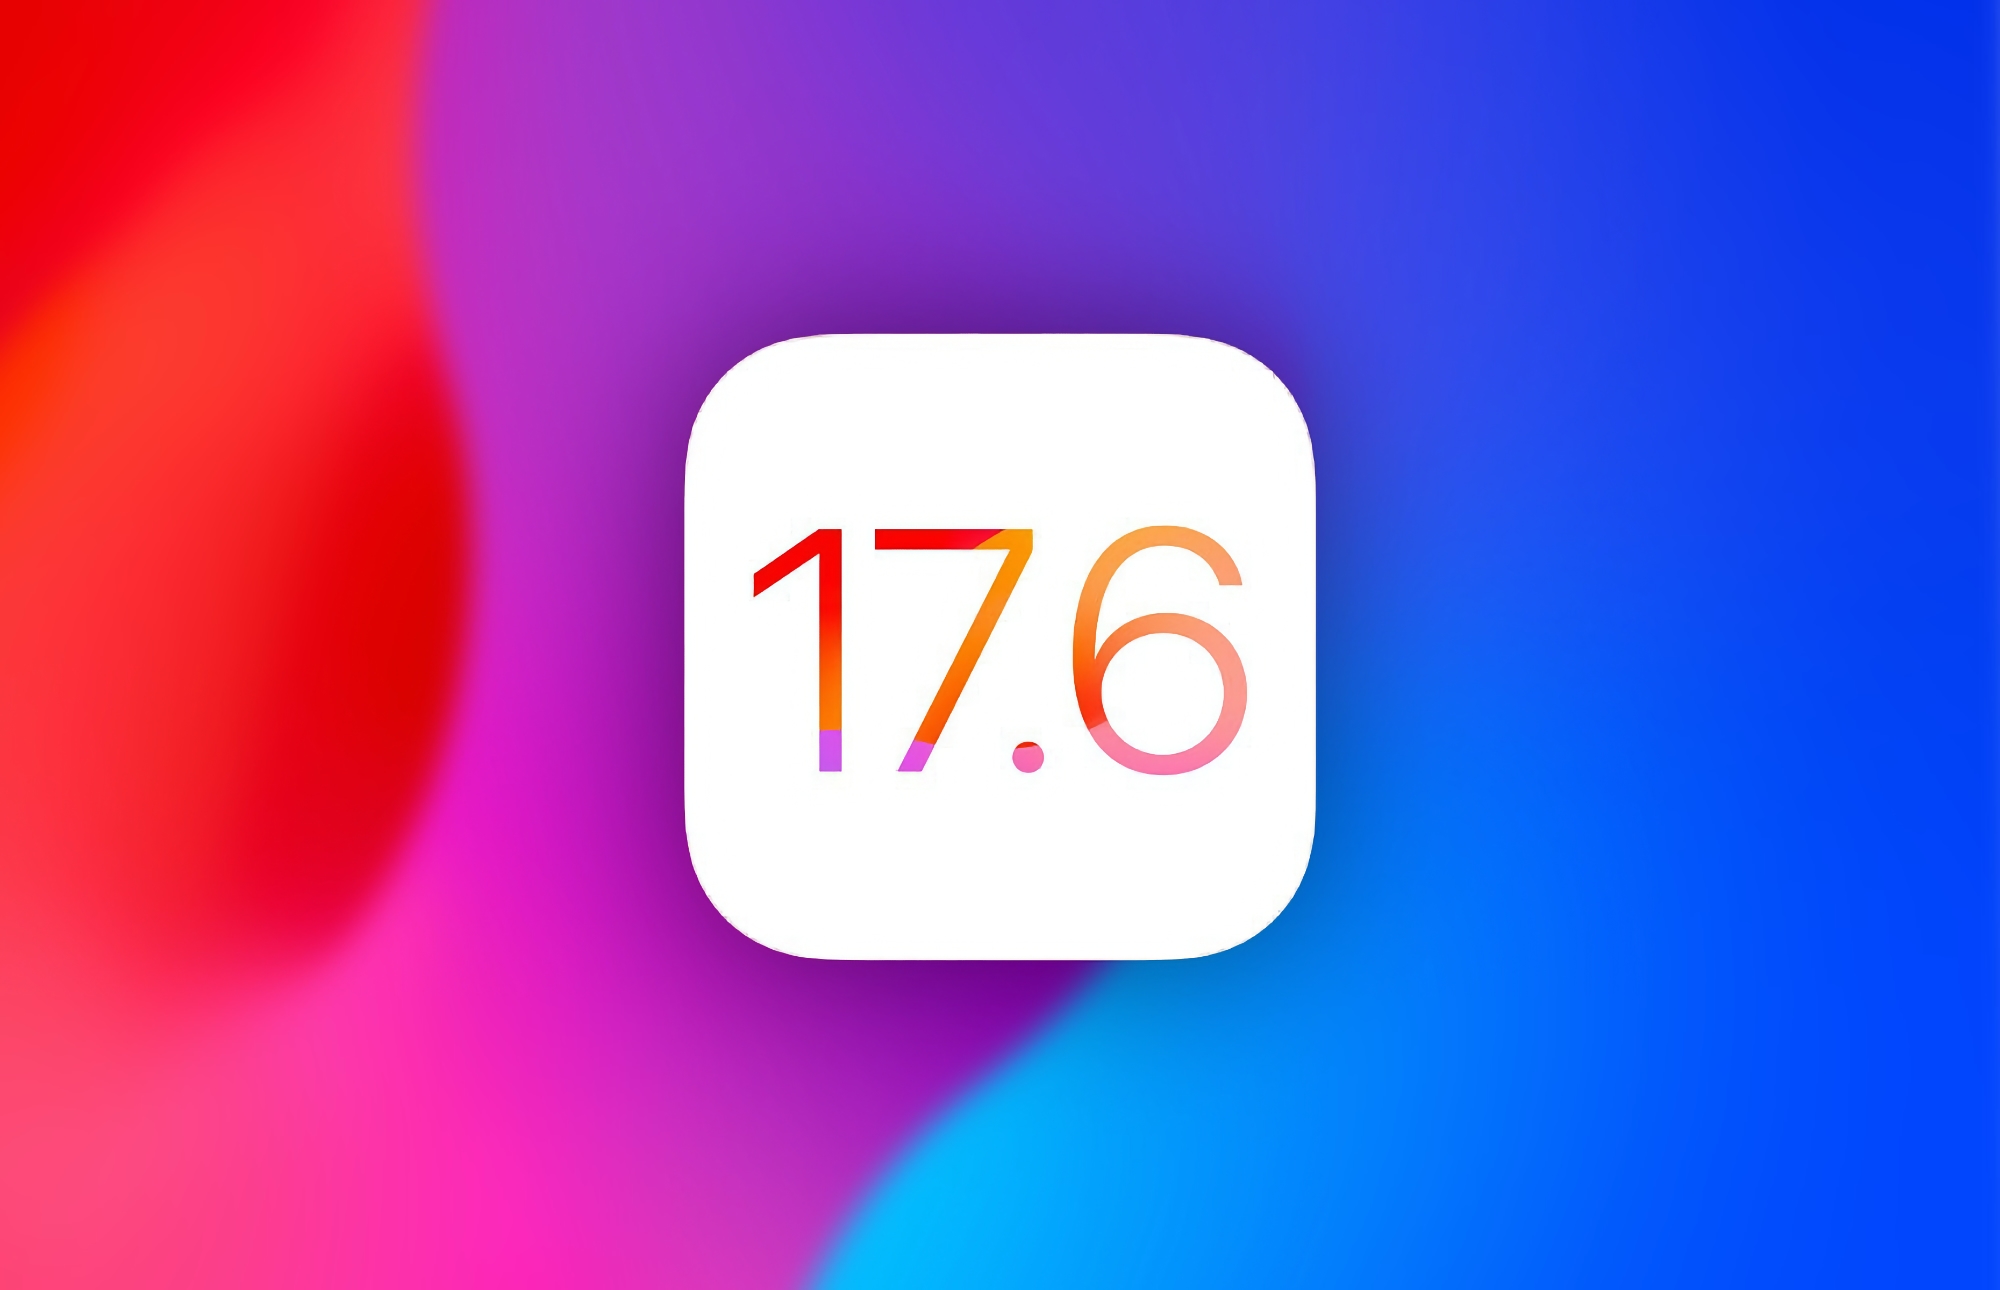 Apple udostępniło czwartą wersję beta systemu iOS 17.6